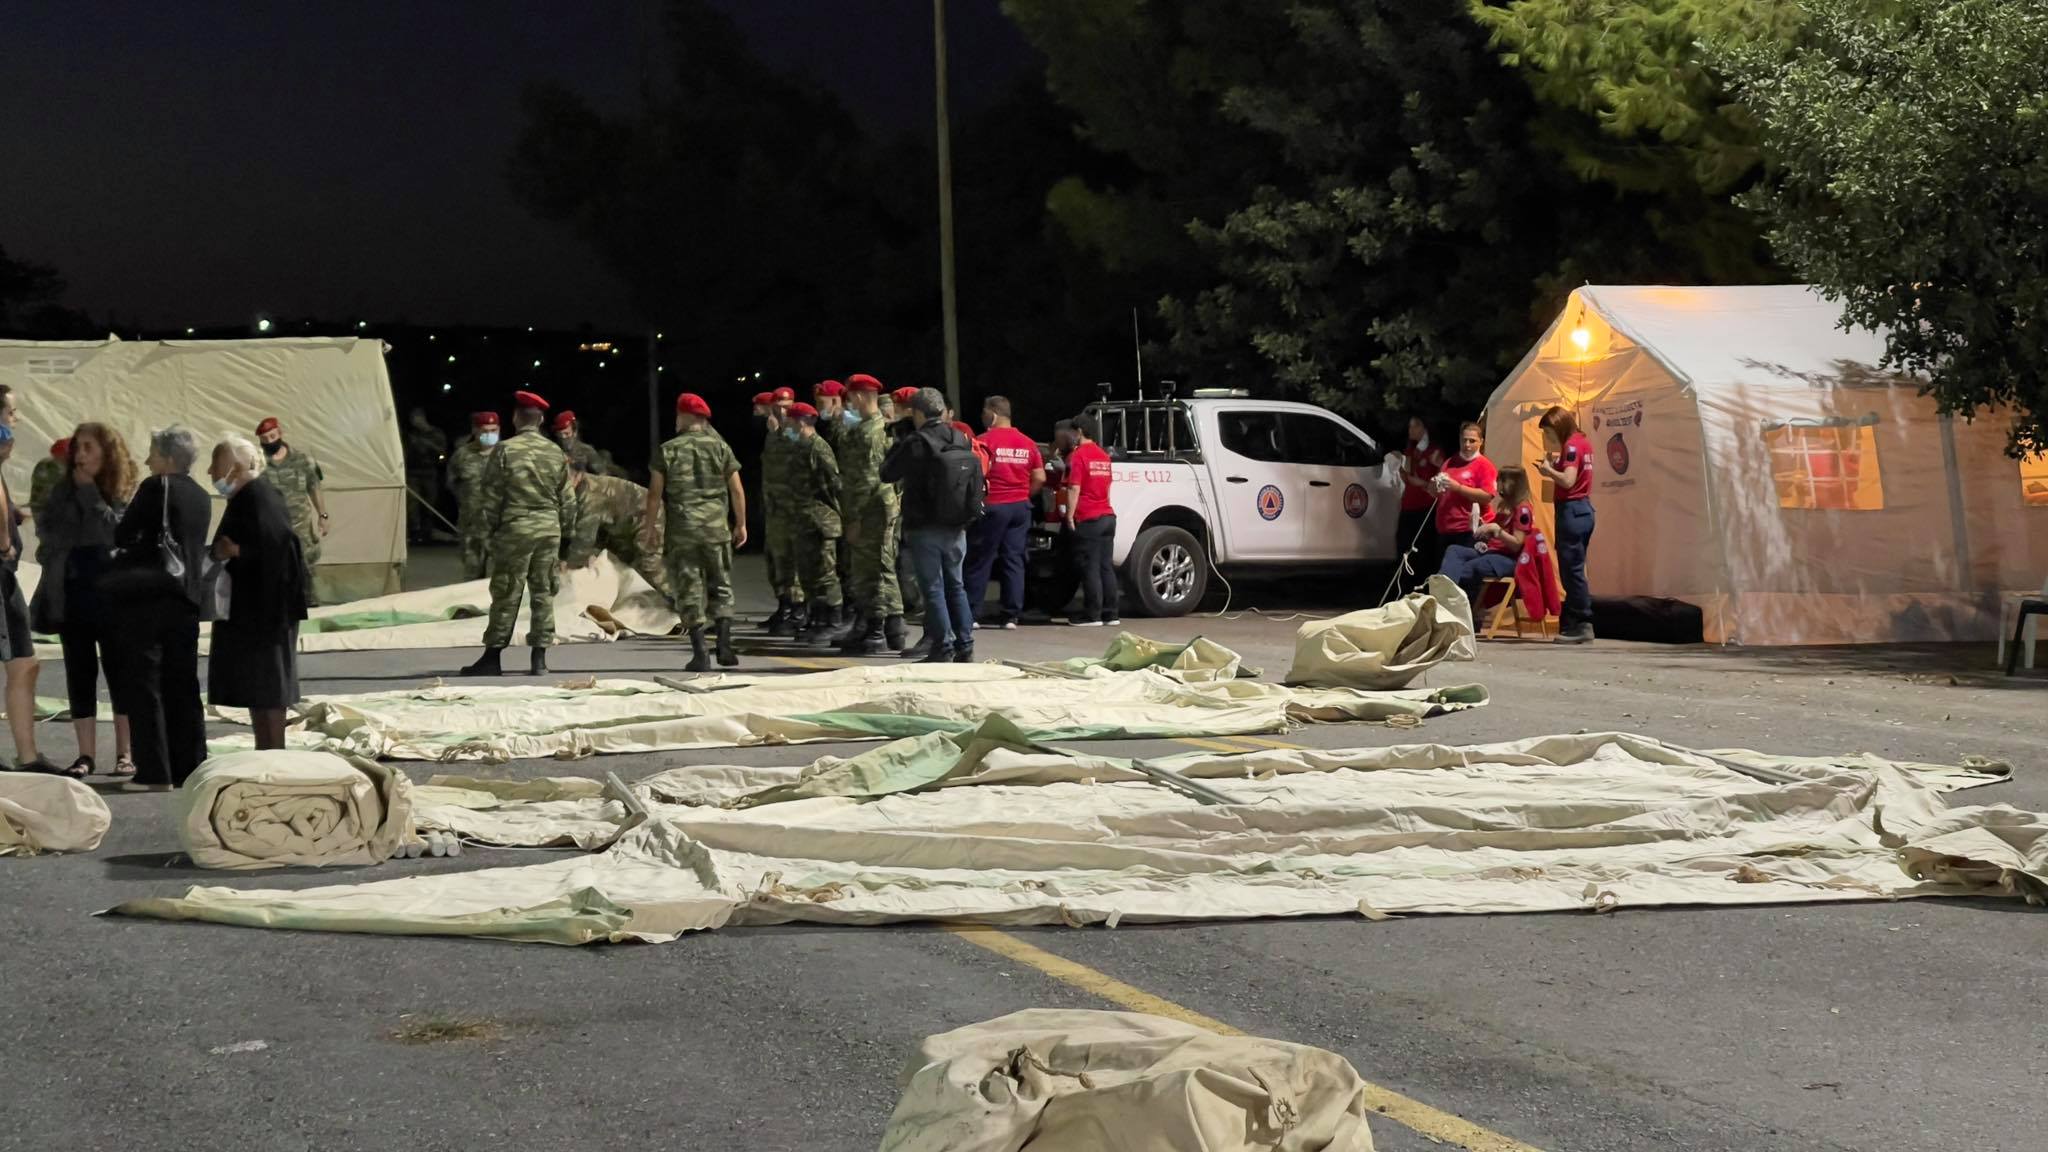 Ηράκλειο- σεισμός: Εγκαθίστανται σκηνές στο Αρκαλοχώρι και την ευρύτερη περιοχή για τους αστέγους